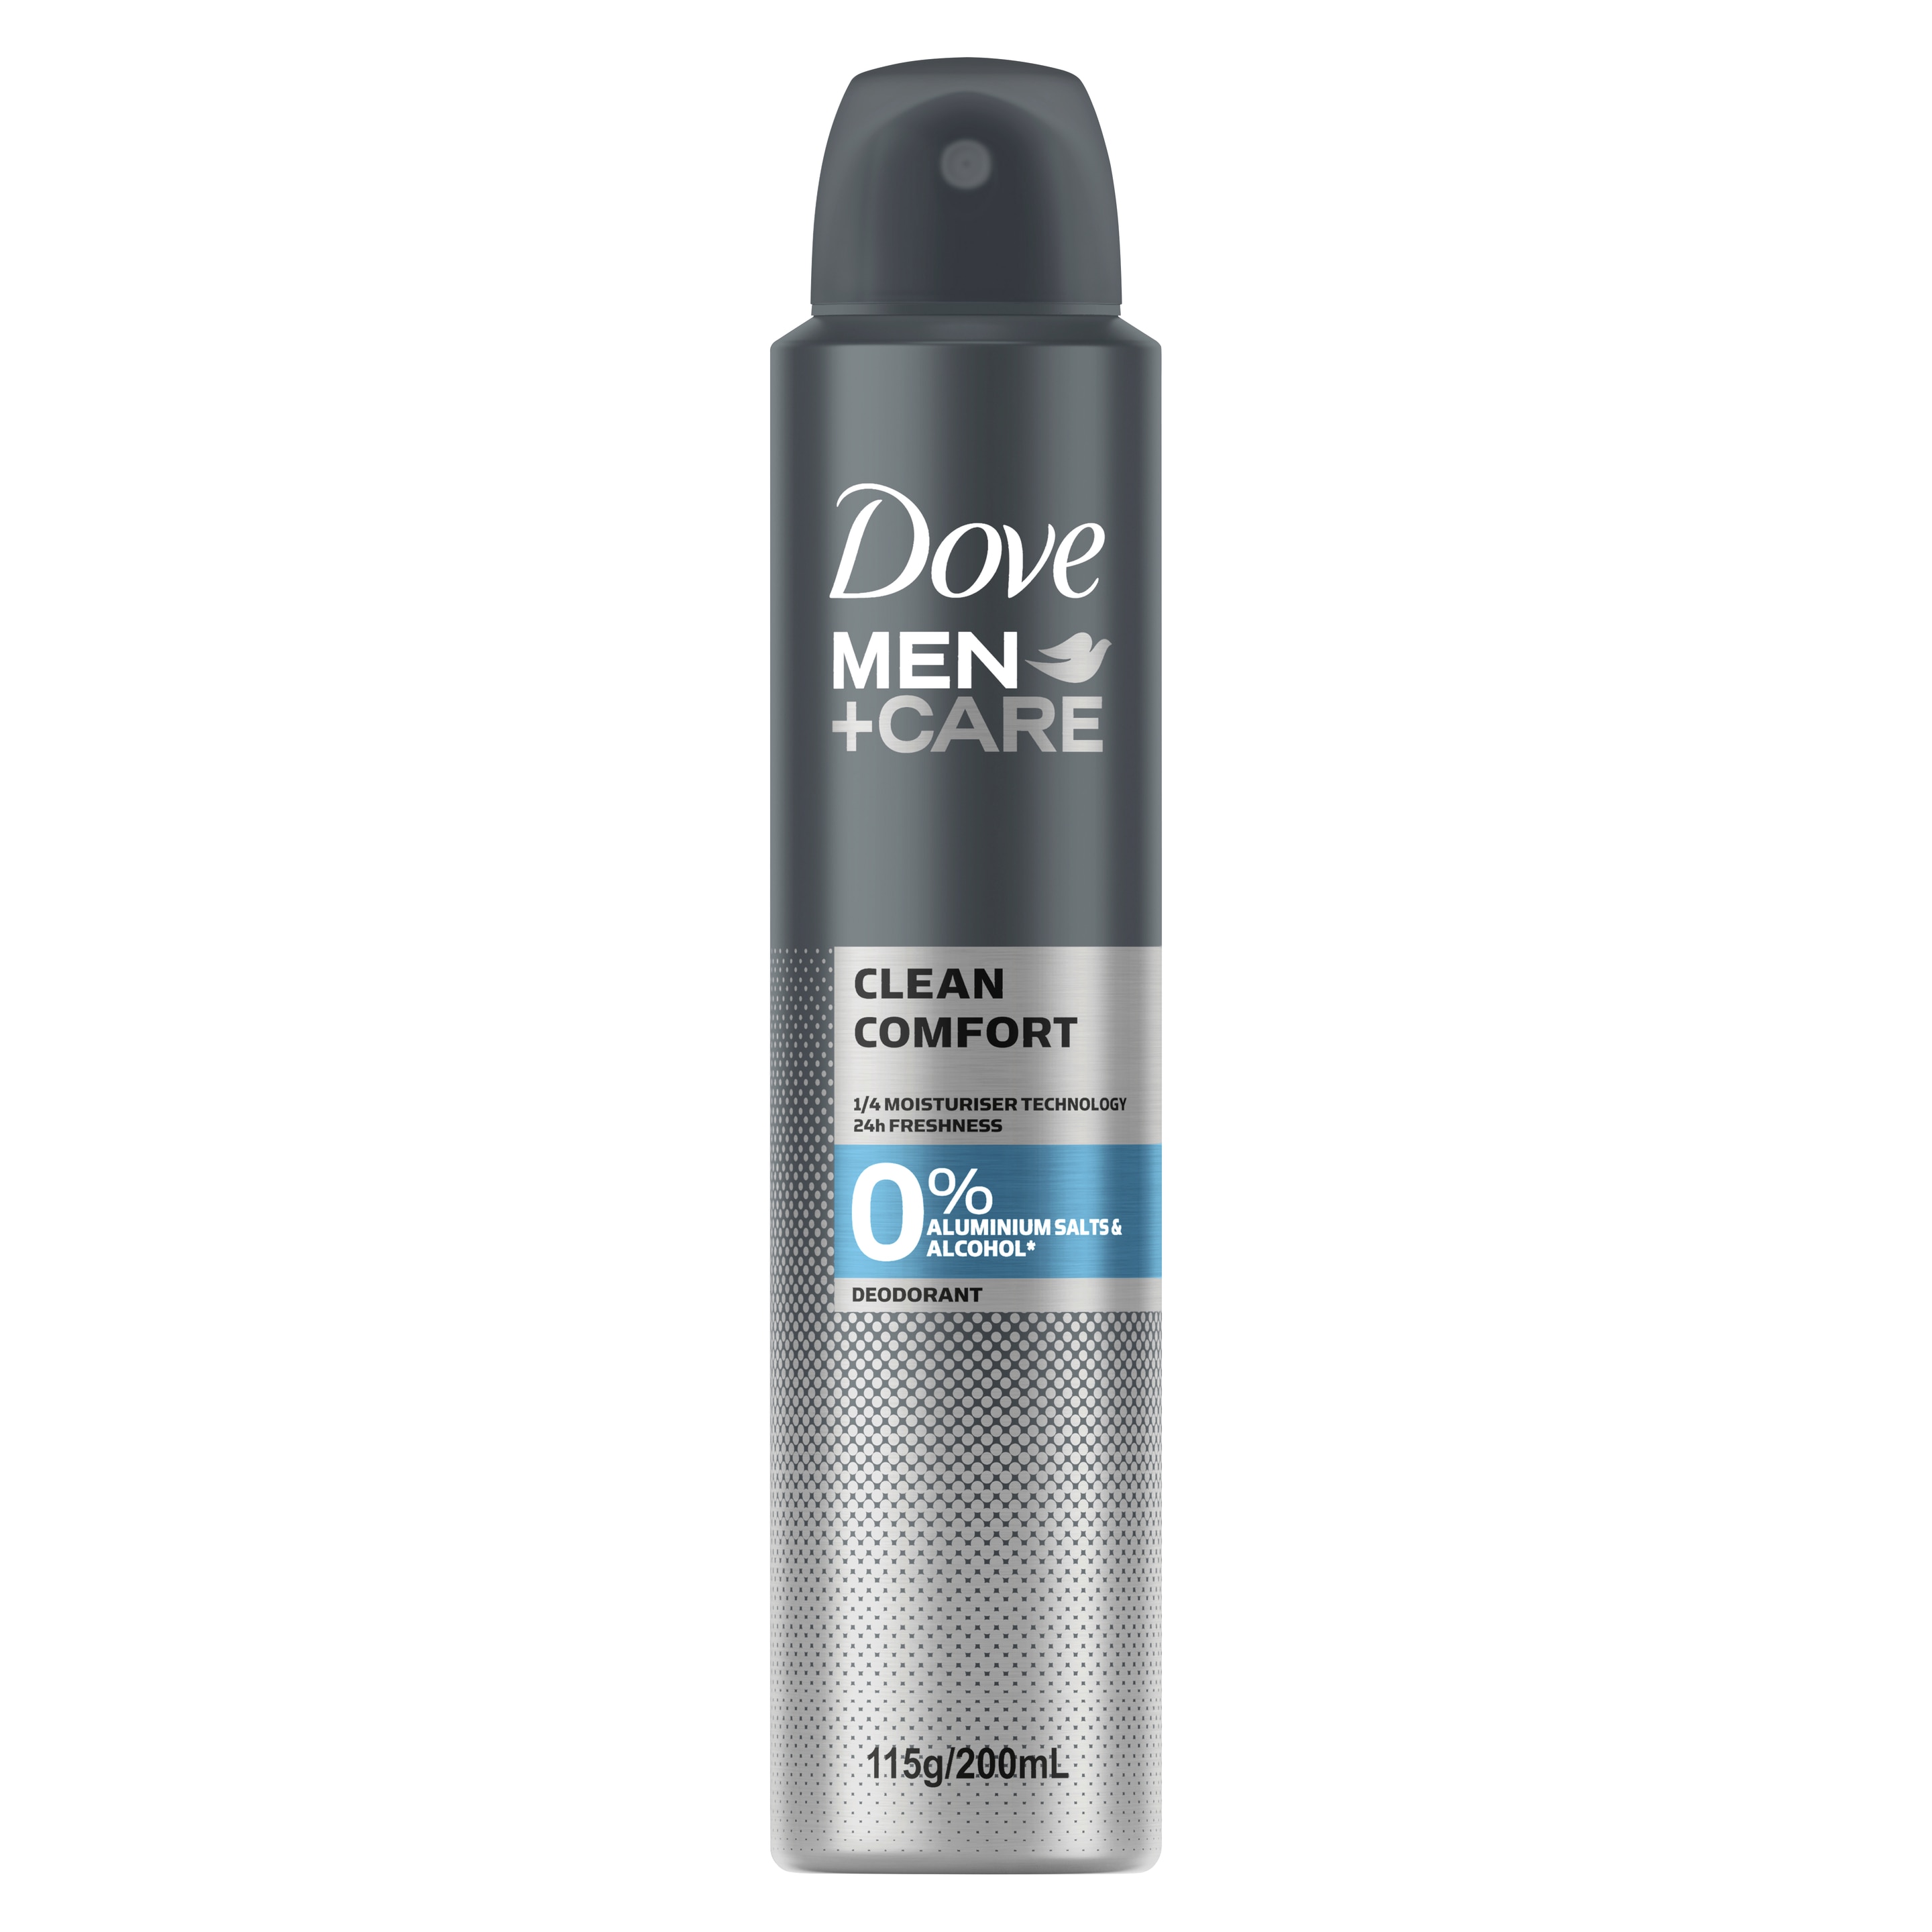 Men+Care 0% Aluminium Aerosol Deodorant Clean Comfort